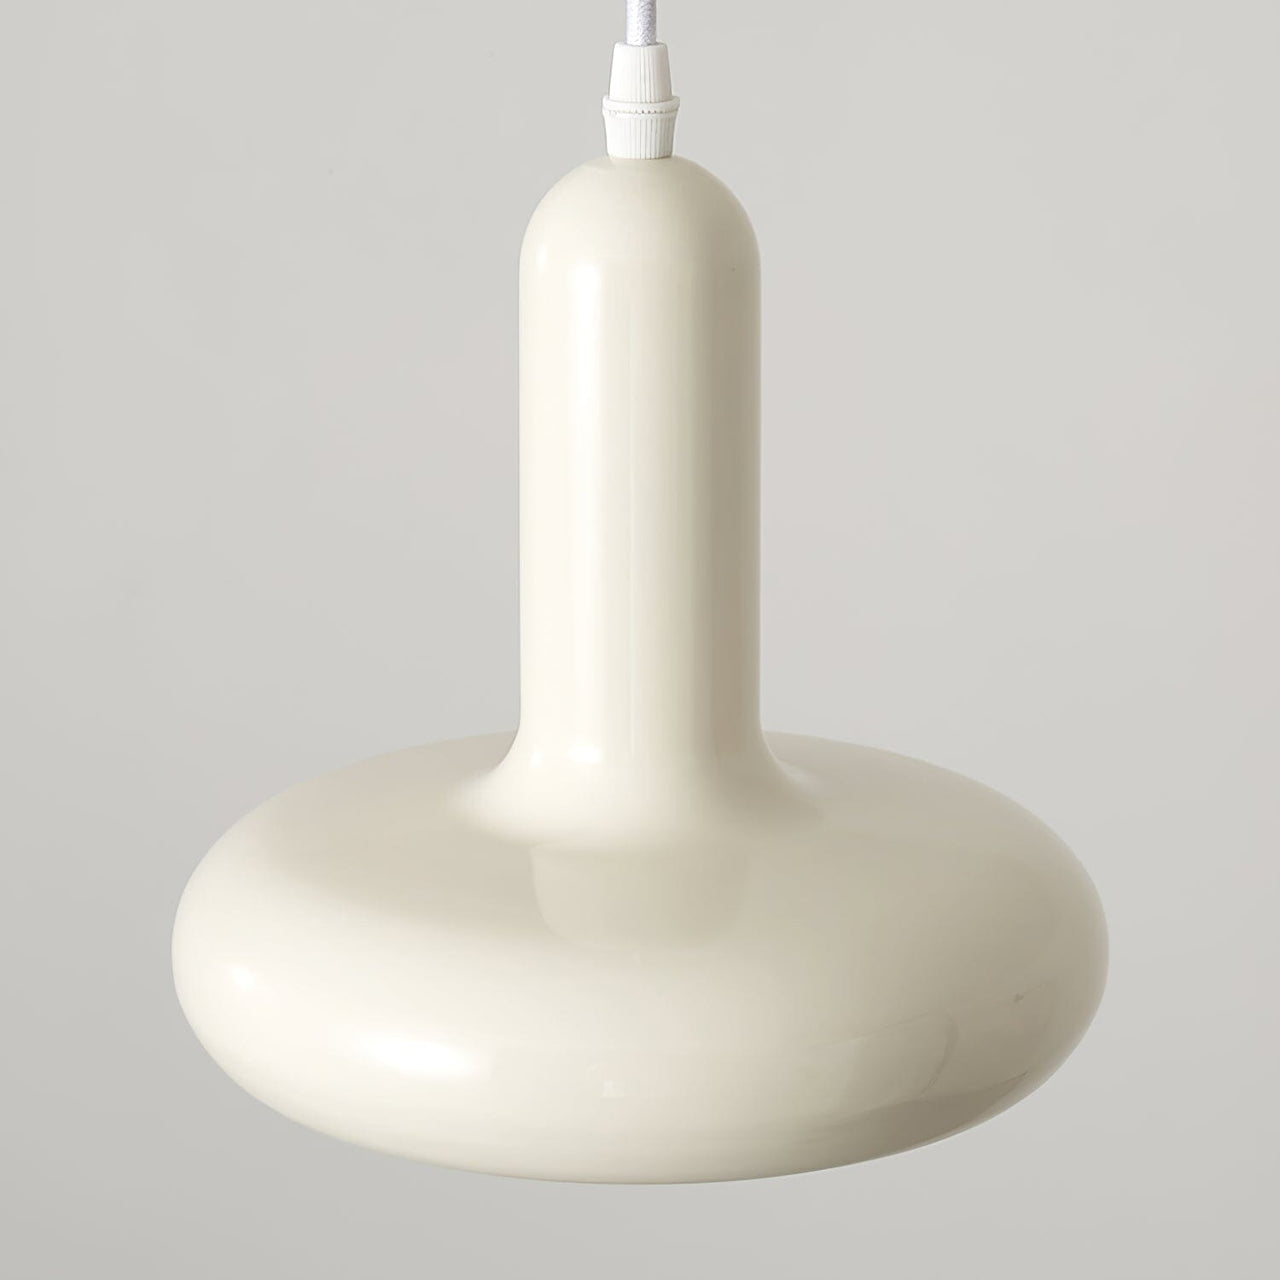 XX-century pendant lamp